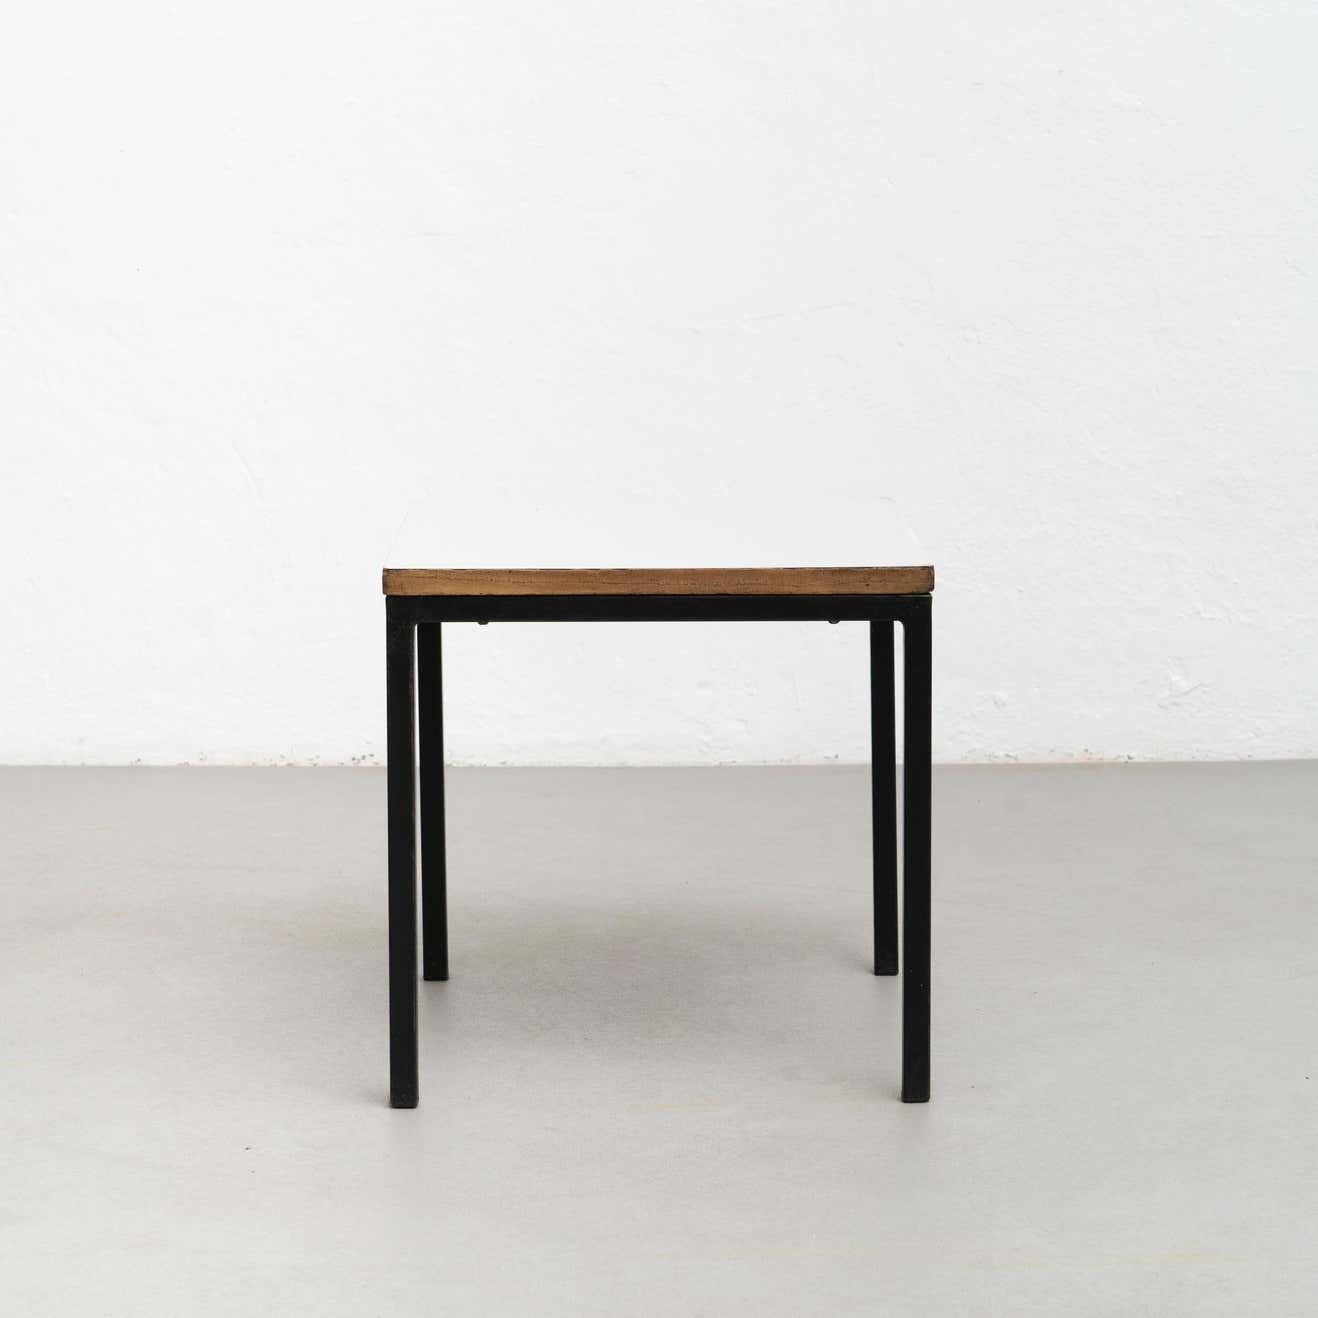 Tisch, entworfen von Charlotte Perriand, um 1950, aus Cité Cansado, Mauretanien, Afrika. 

Lackierter Stahl, mit Kunststofflaminat überzogenes Holz.

Maße: 74,3 x 80 x 80 cm

In gutem Originalzustand mit geringen alters- und gebrauchsbedingten